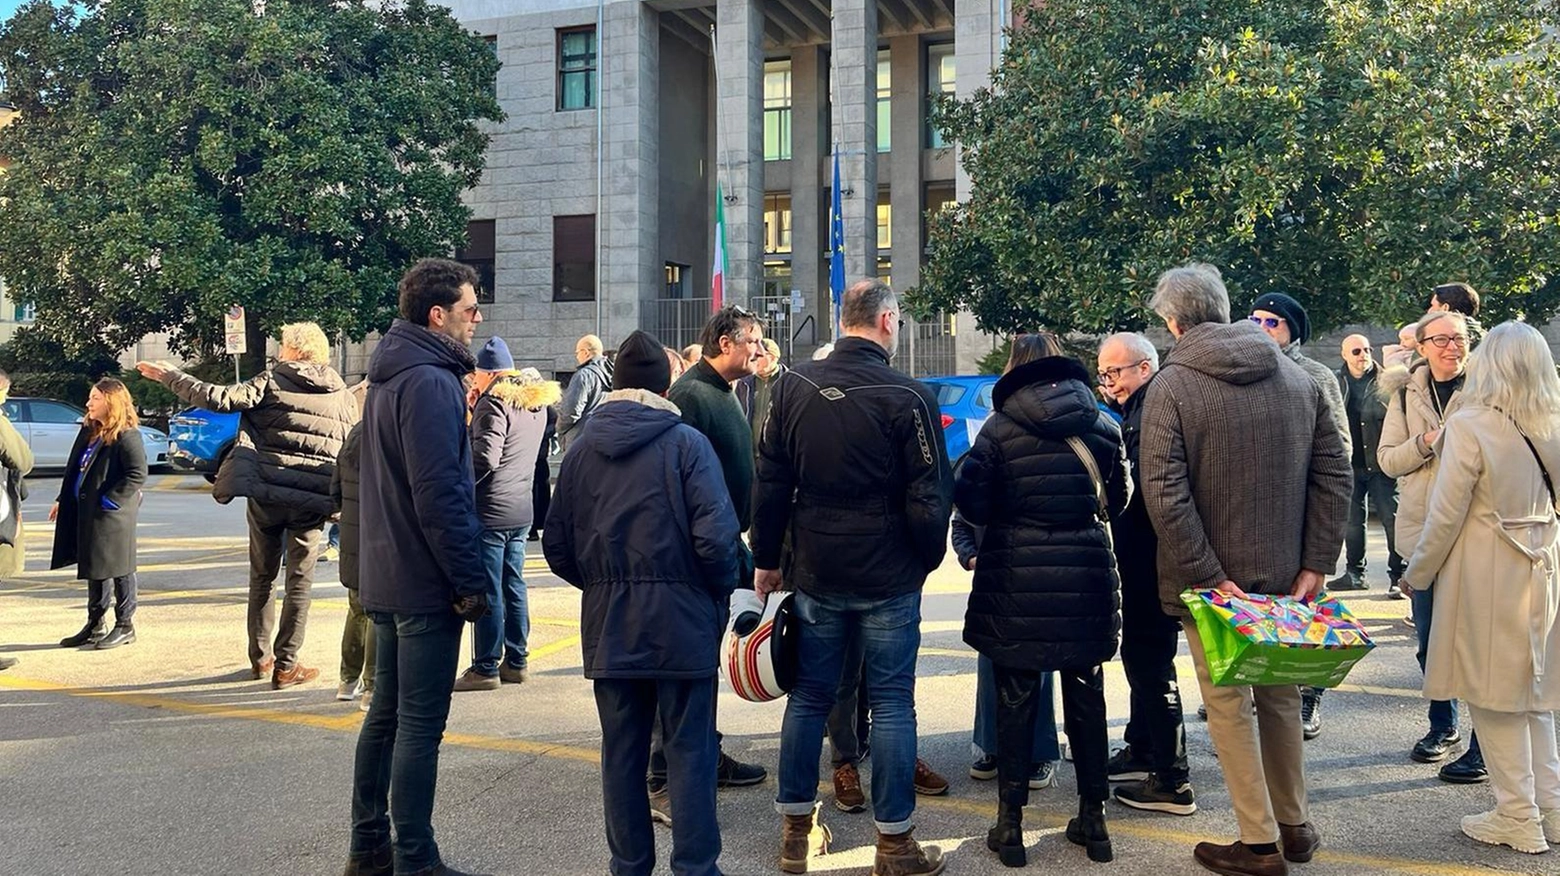 I residenti del centro di Pisa criticano la proposta del Comune di tariffe agevolate per gli studenti, sostenendo che dovrebbero essere favoriti i residenti anziché aumentare il traffico e l'occupazione dei parcheggi.